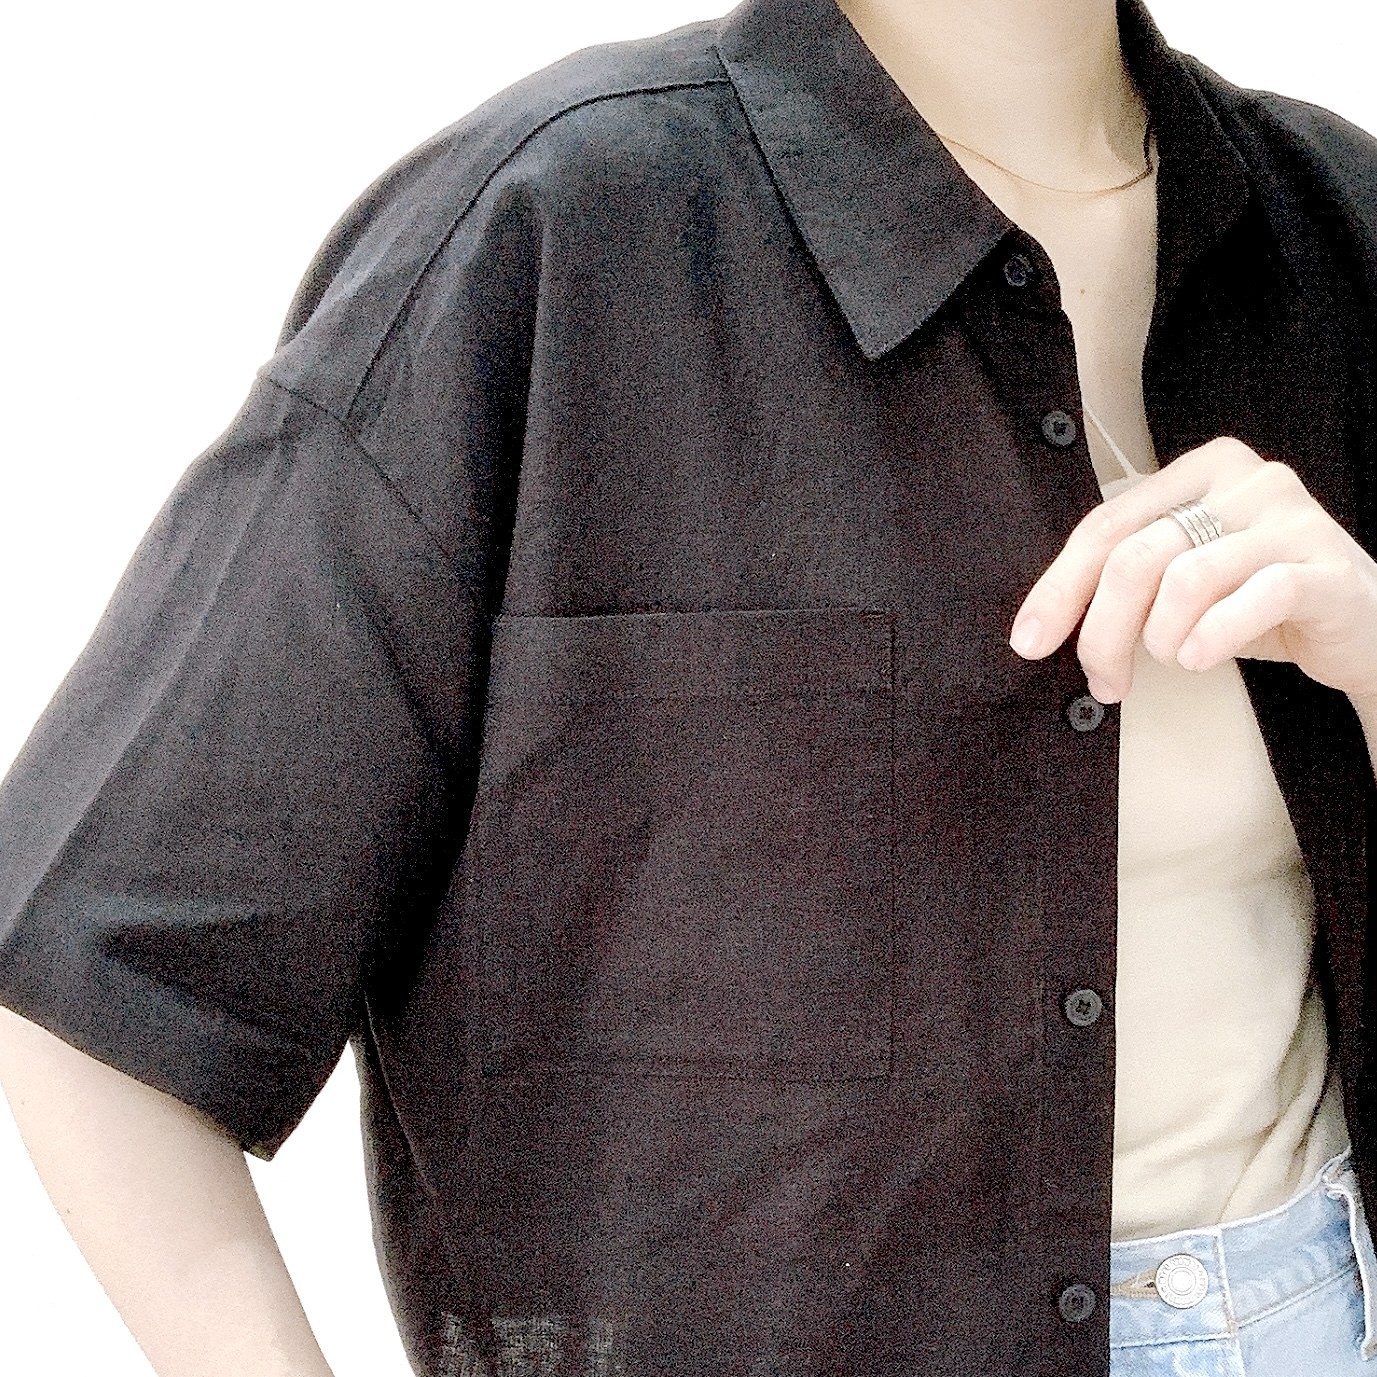 GU（ジーユー）のおすすめのレディースアイテム「リネンブレンドクロップドシャツ（5分袖）」